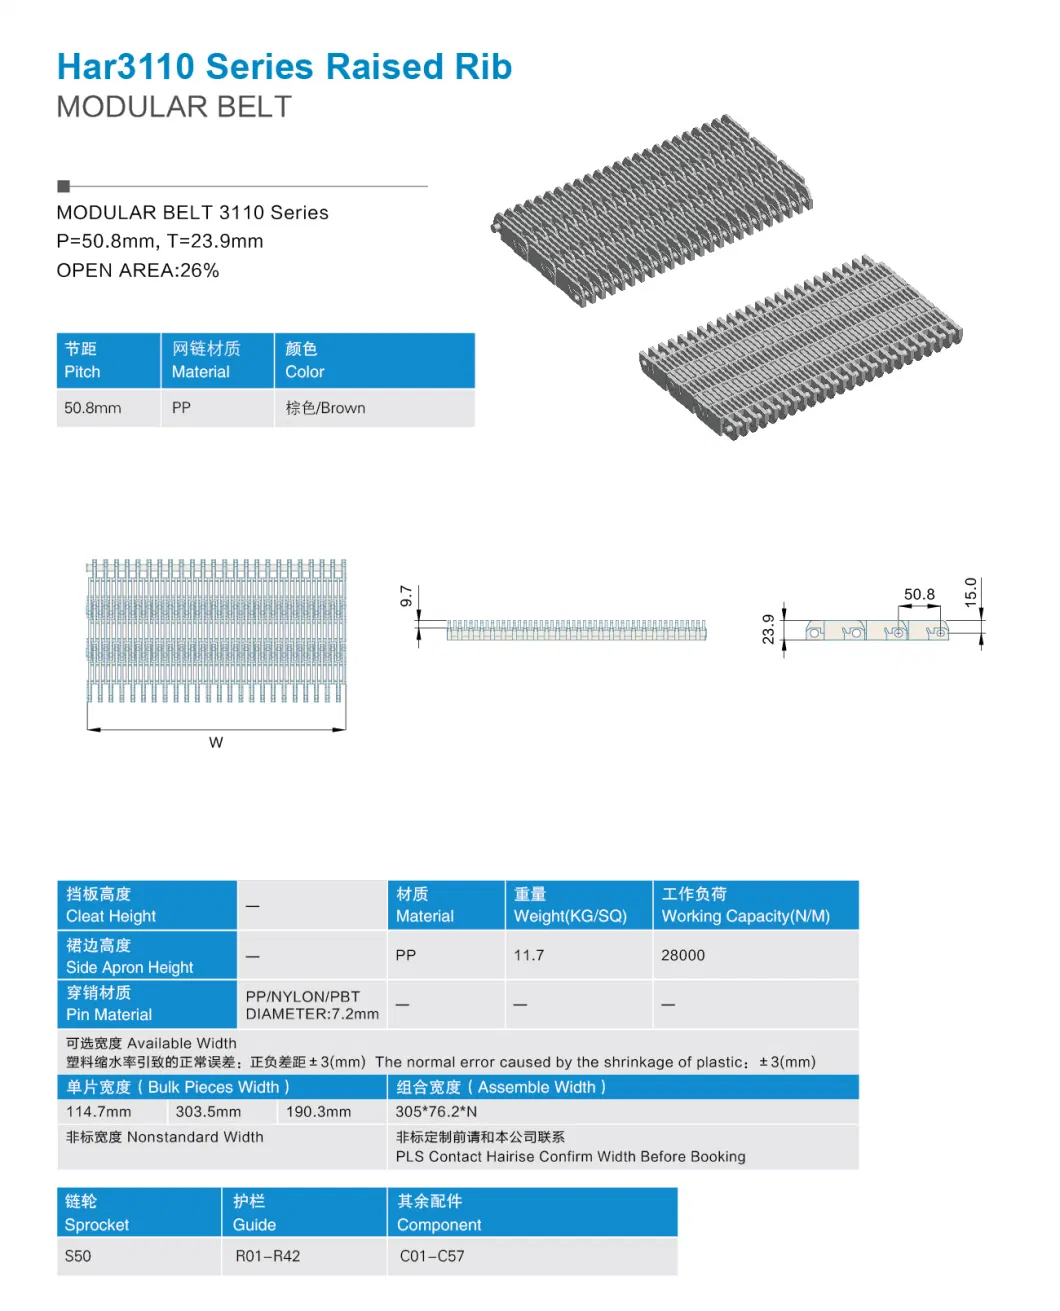 Raised Rib Conveyor PP Material Big Picth Modular Belt (har3110) Wtih FDA&amp; Gsg Certificate